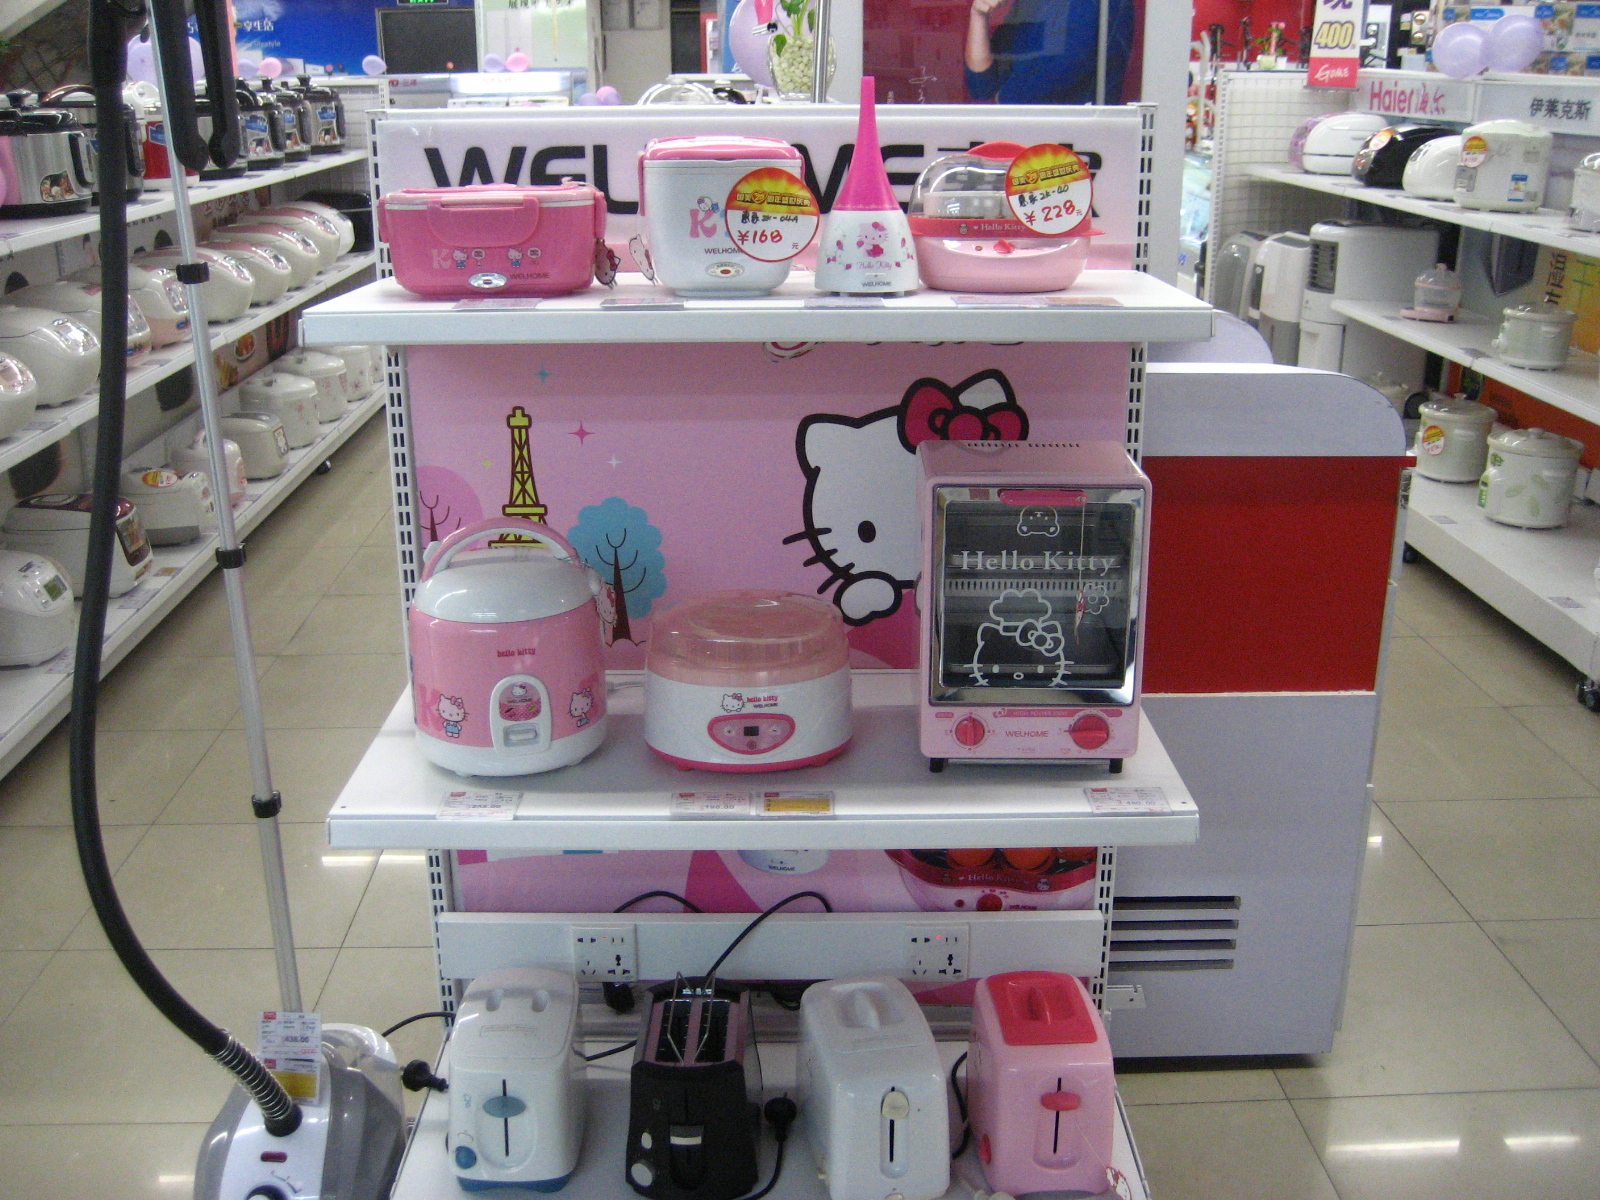 kitchen appliances: Hello Kitty Kitchen Appliances